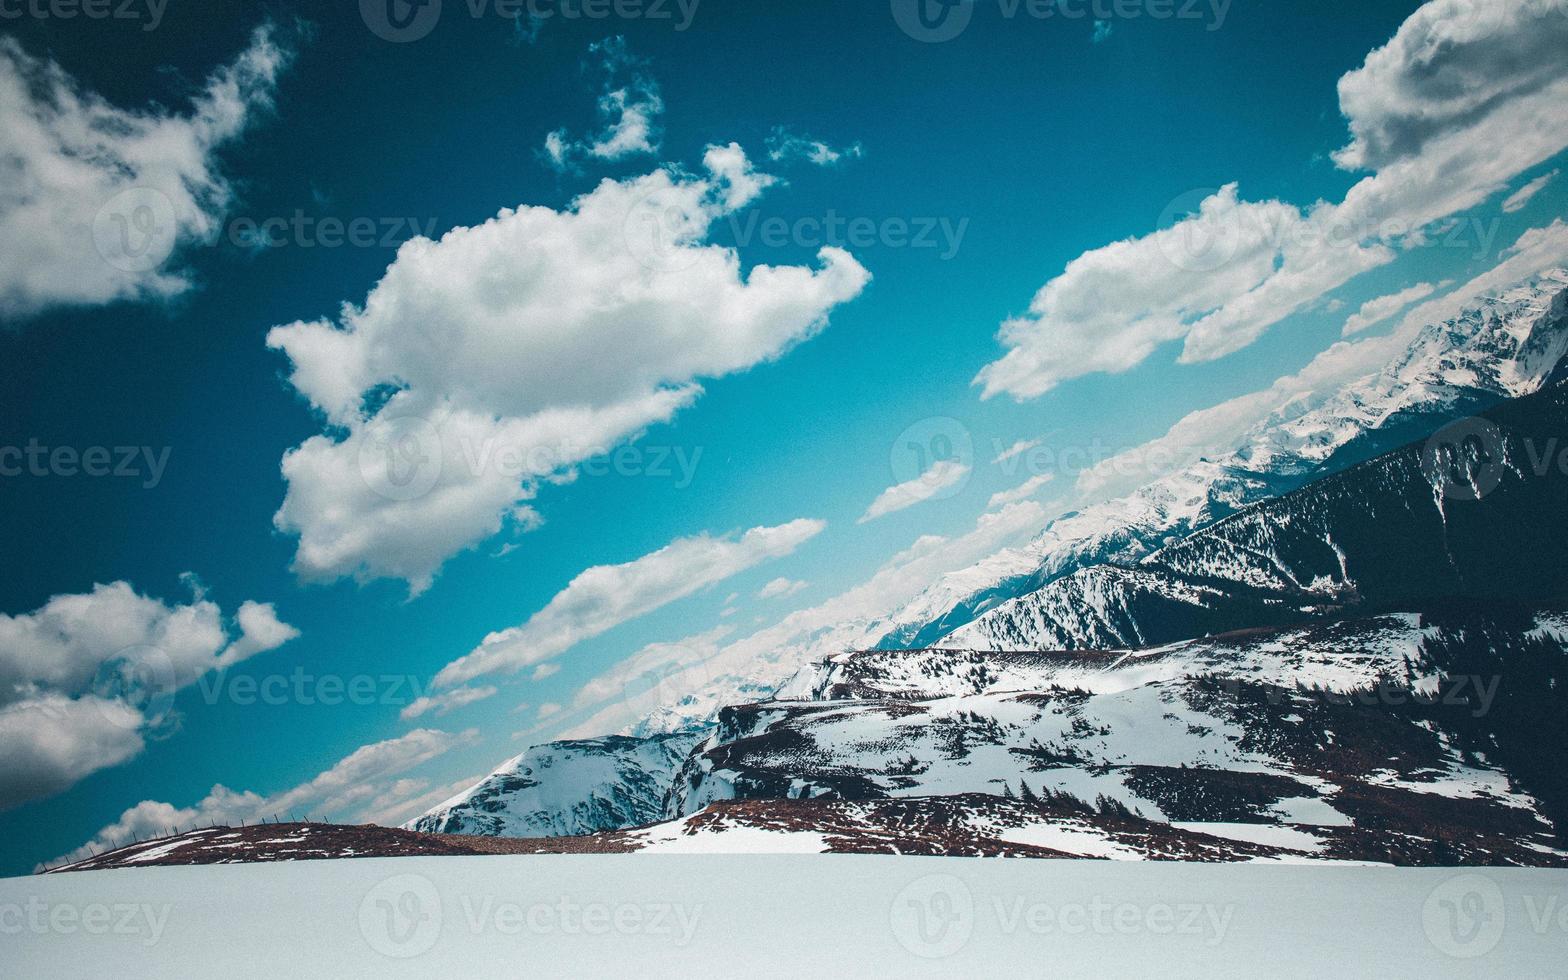 ett vinkel- skott av snötäckt bergen under fluffig moln foto